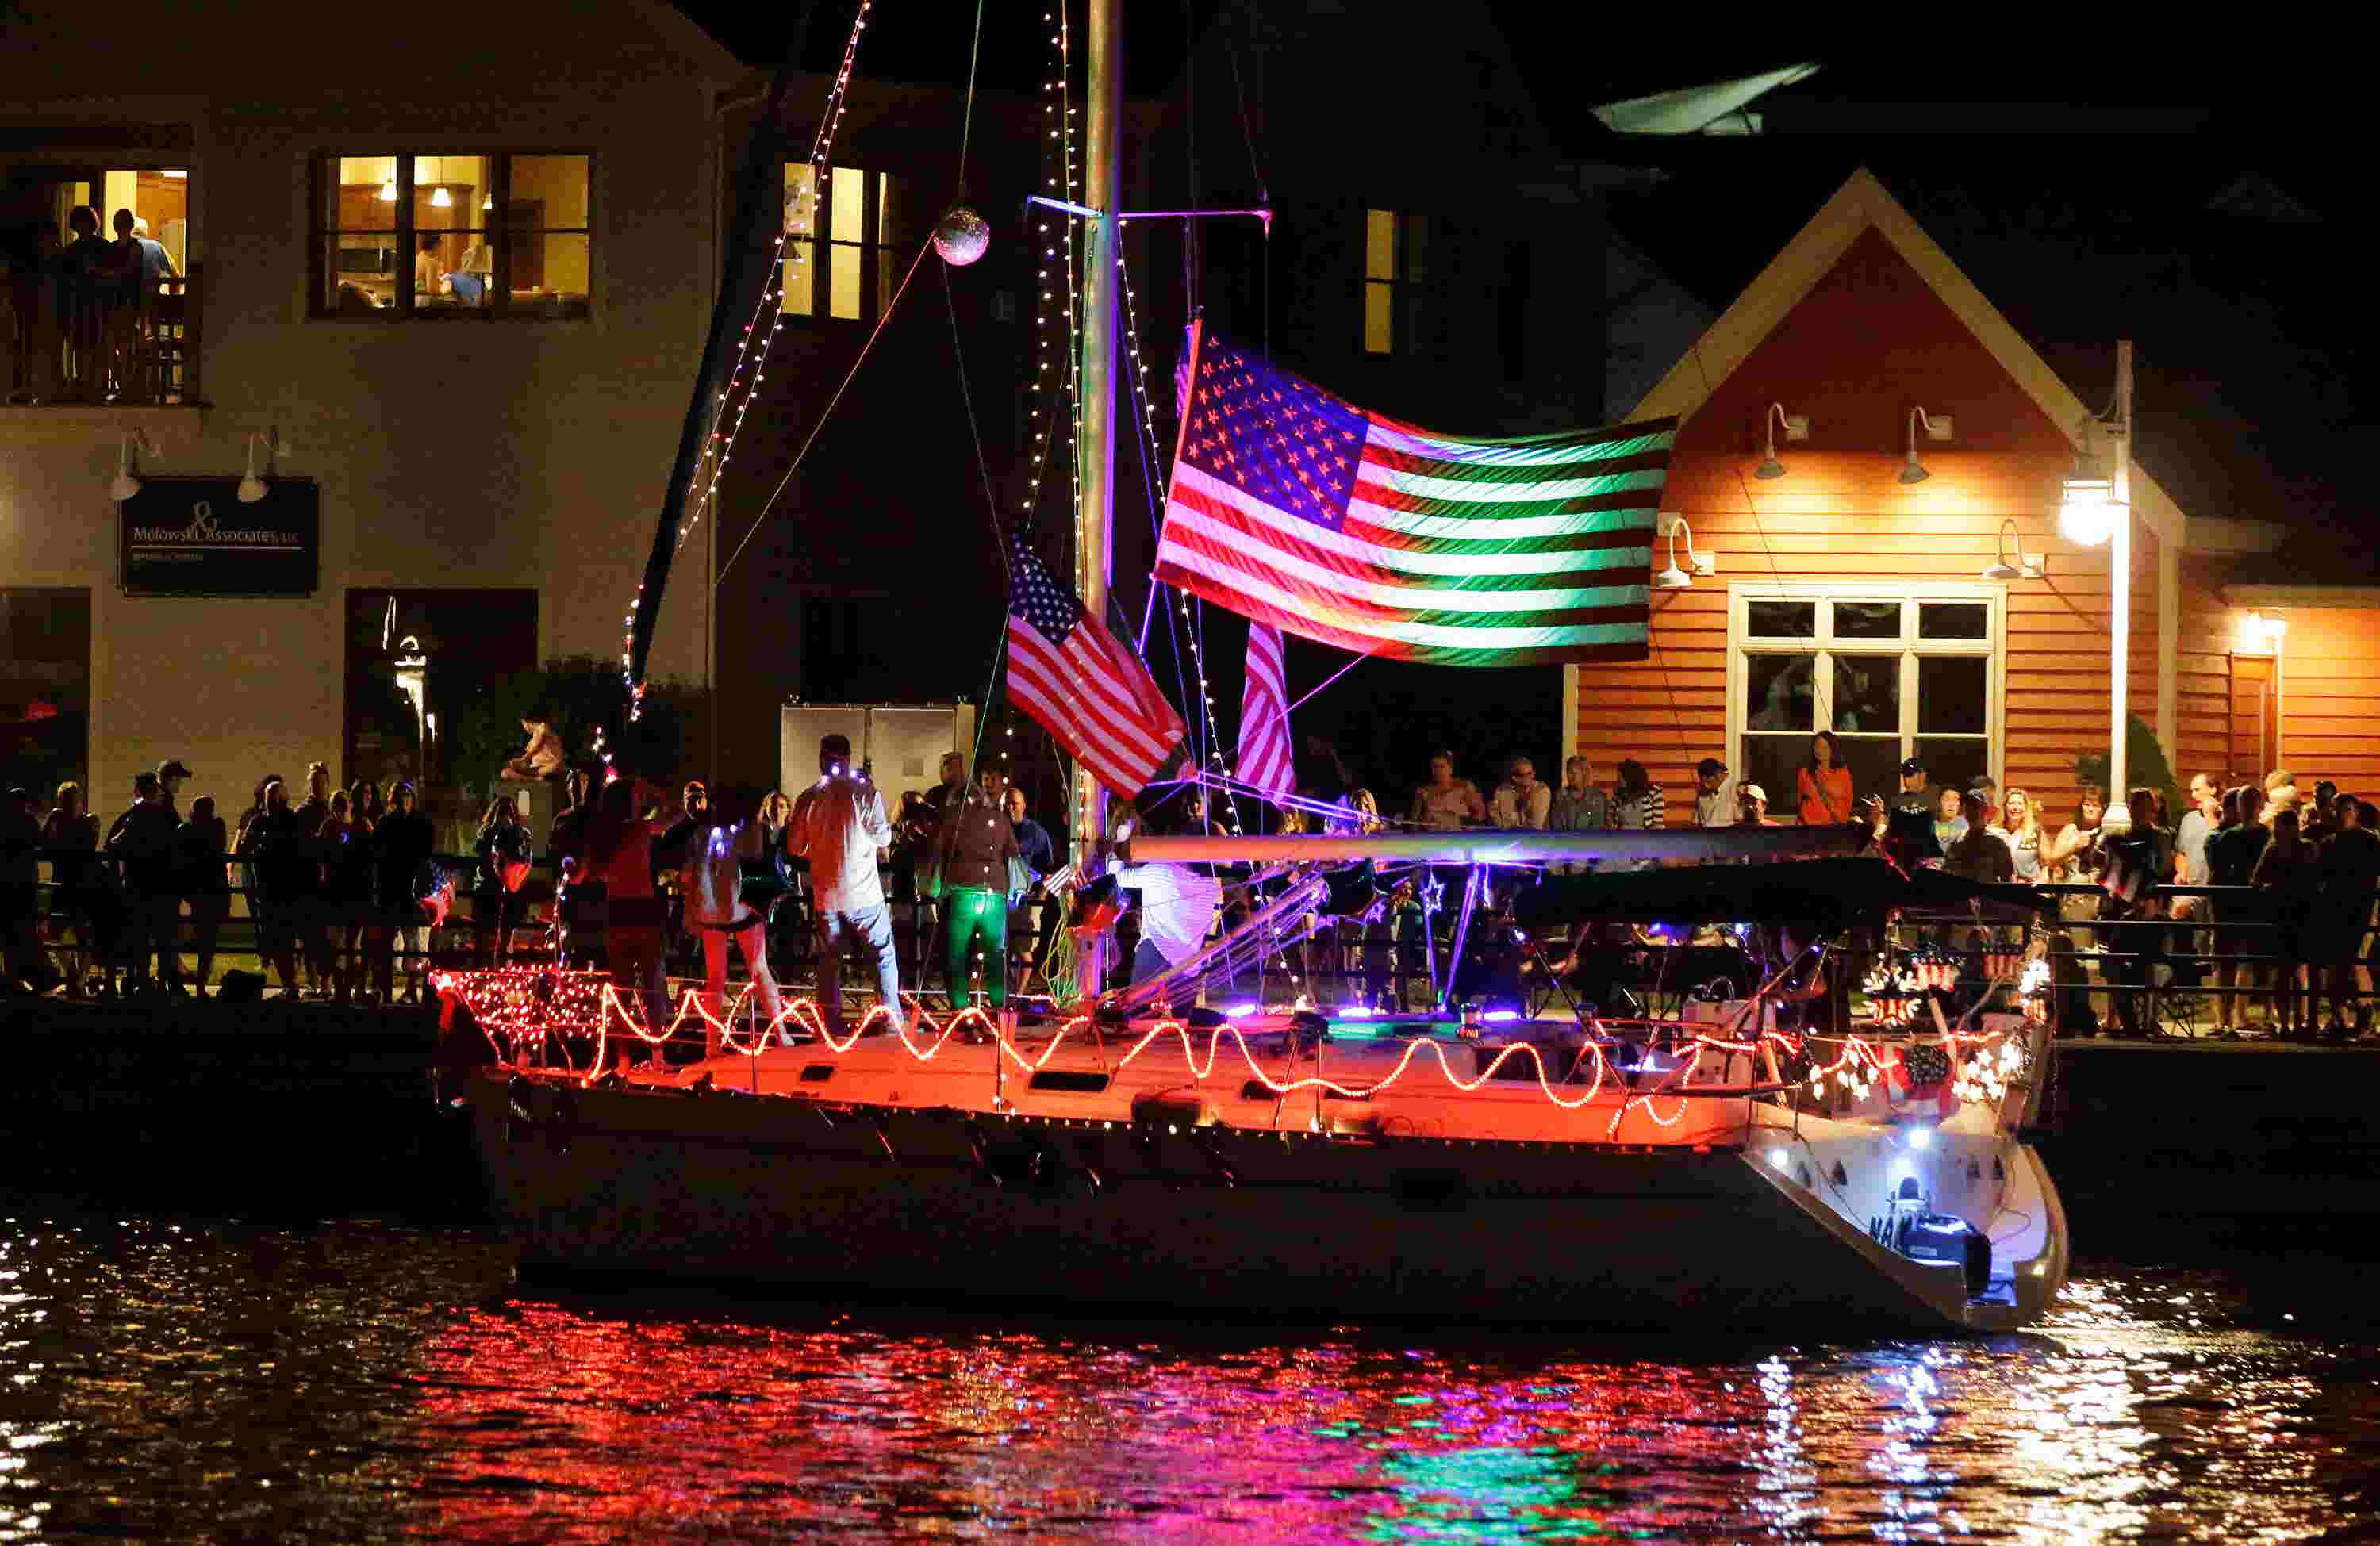 Sheboygan's Boat Parade kicks off Fourth of July fun